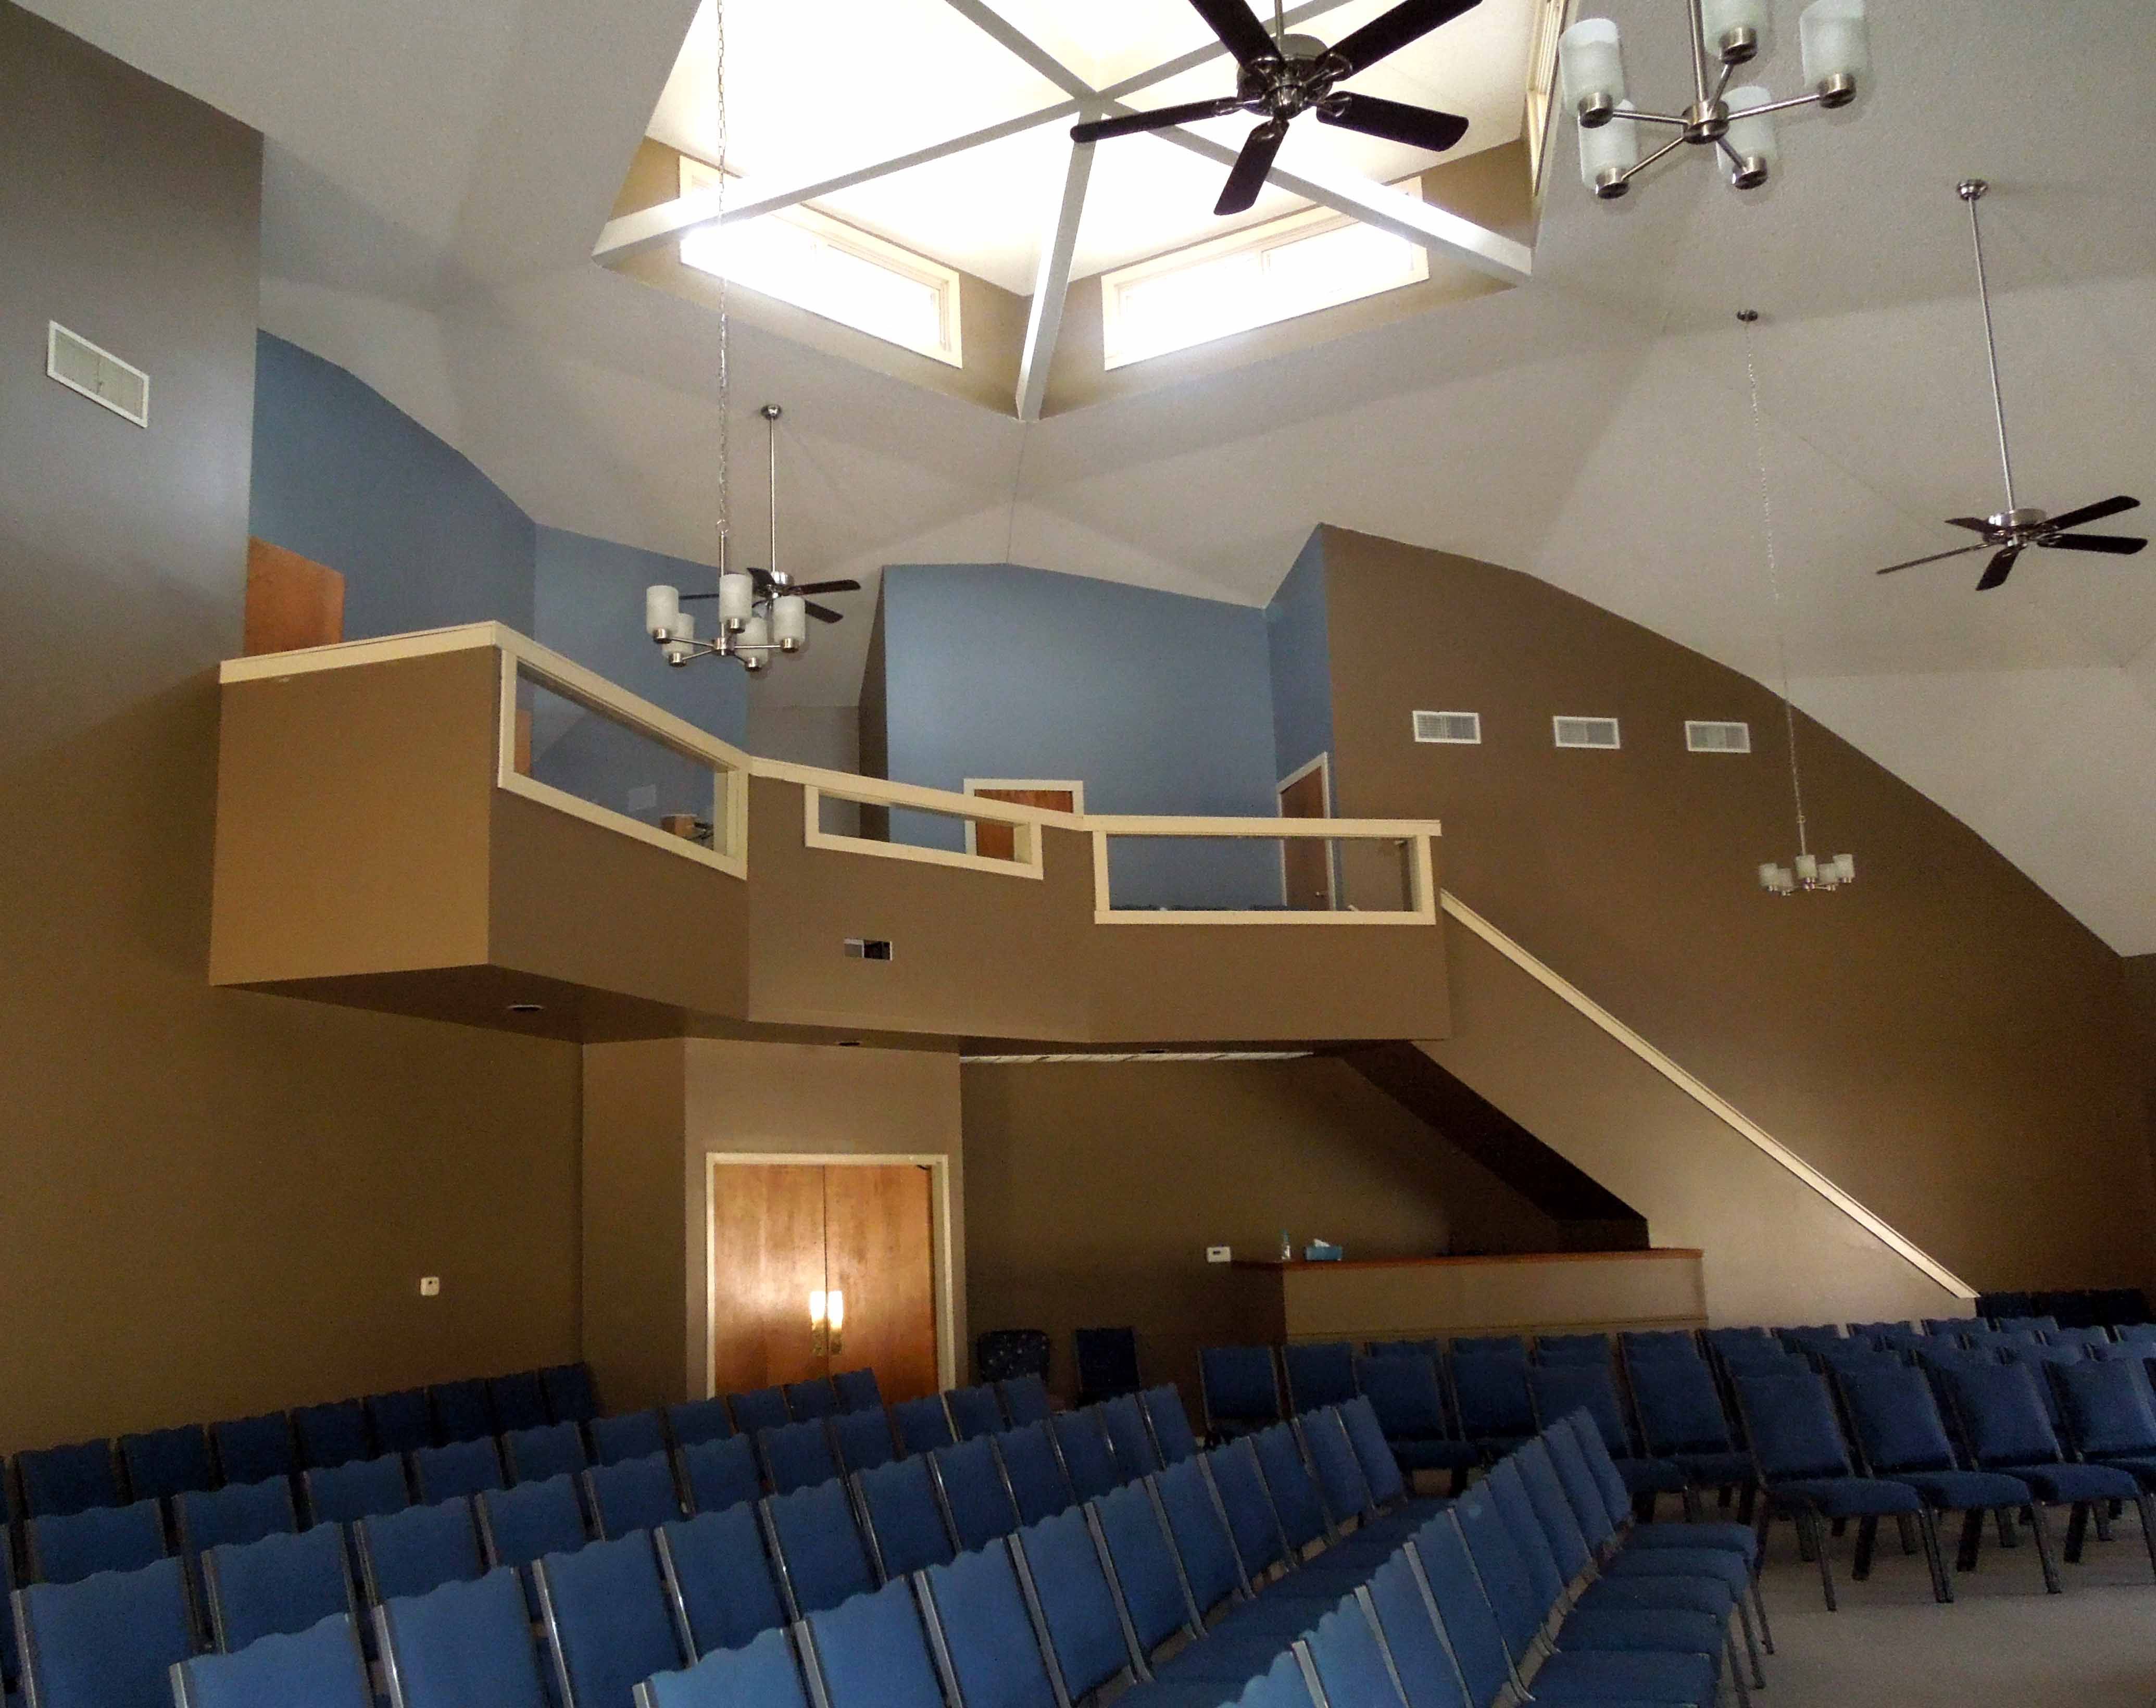 Dome Church Interior 1